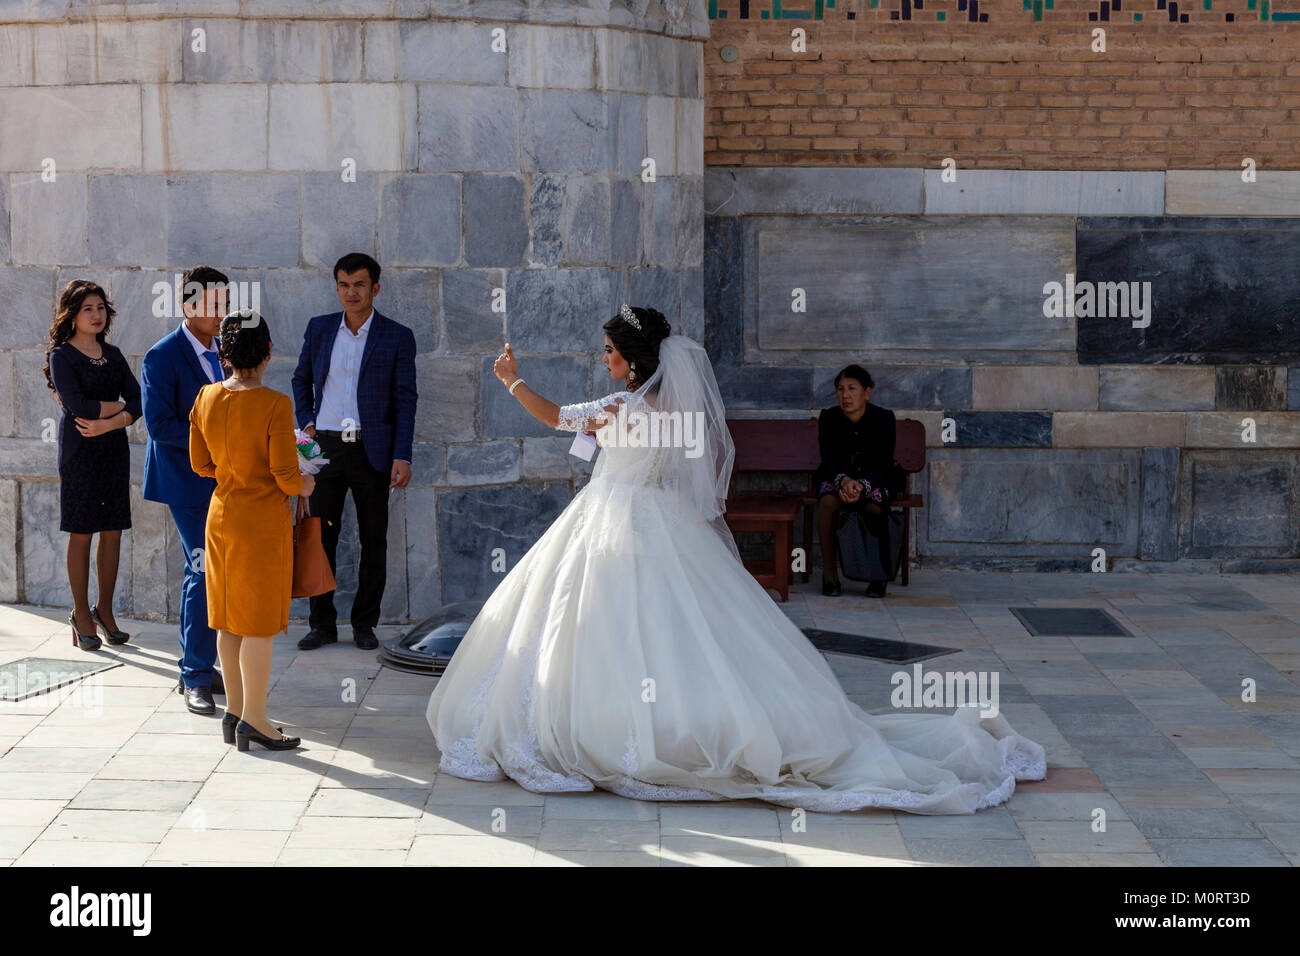 Eine 'Just Married' Junges Paar Am Registan Komplexes für Ihre Hochzeit Fotos, der Registan, Samarkand, Usbekistan Stockfoto